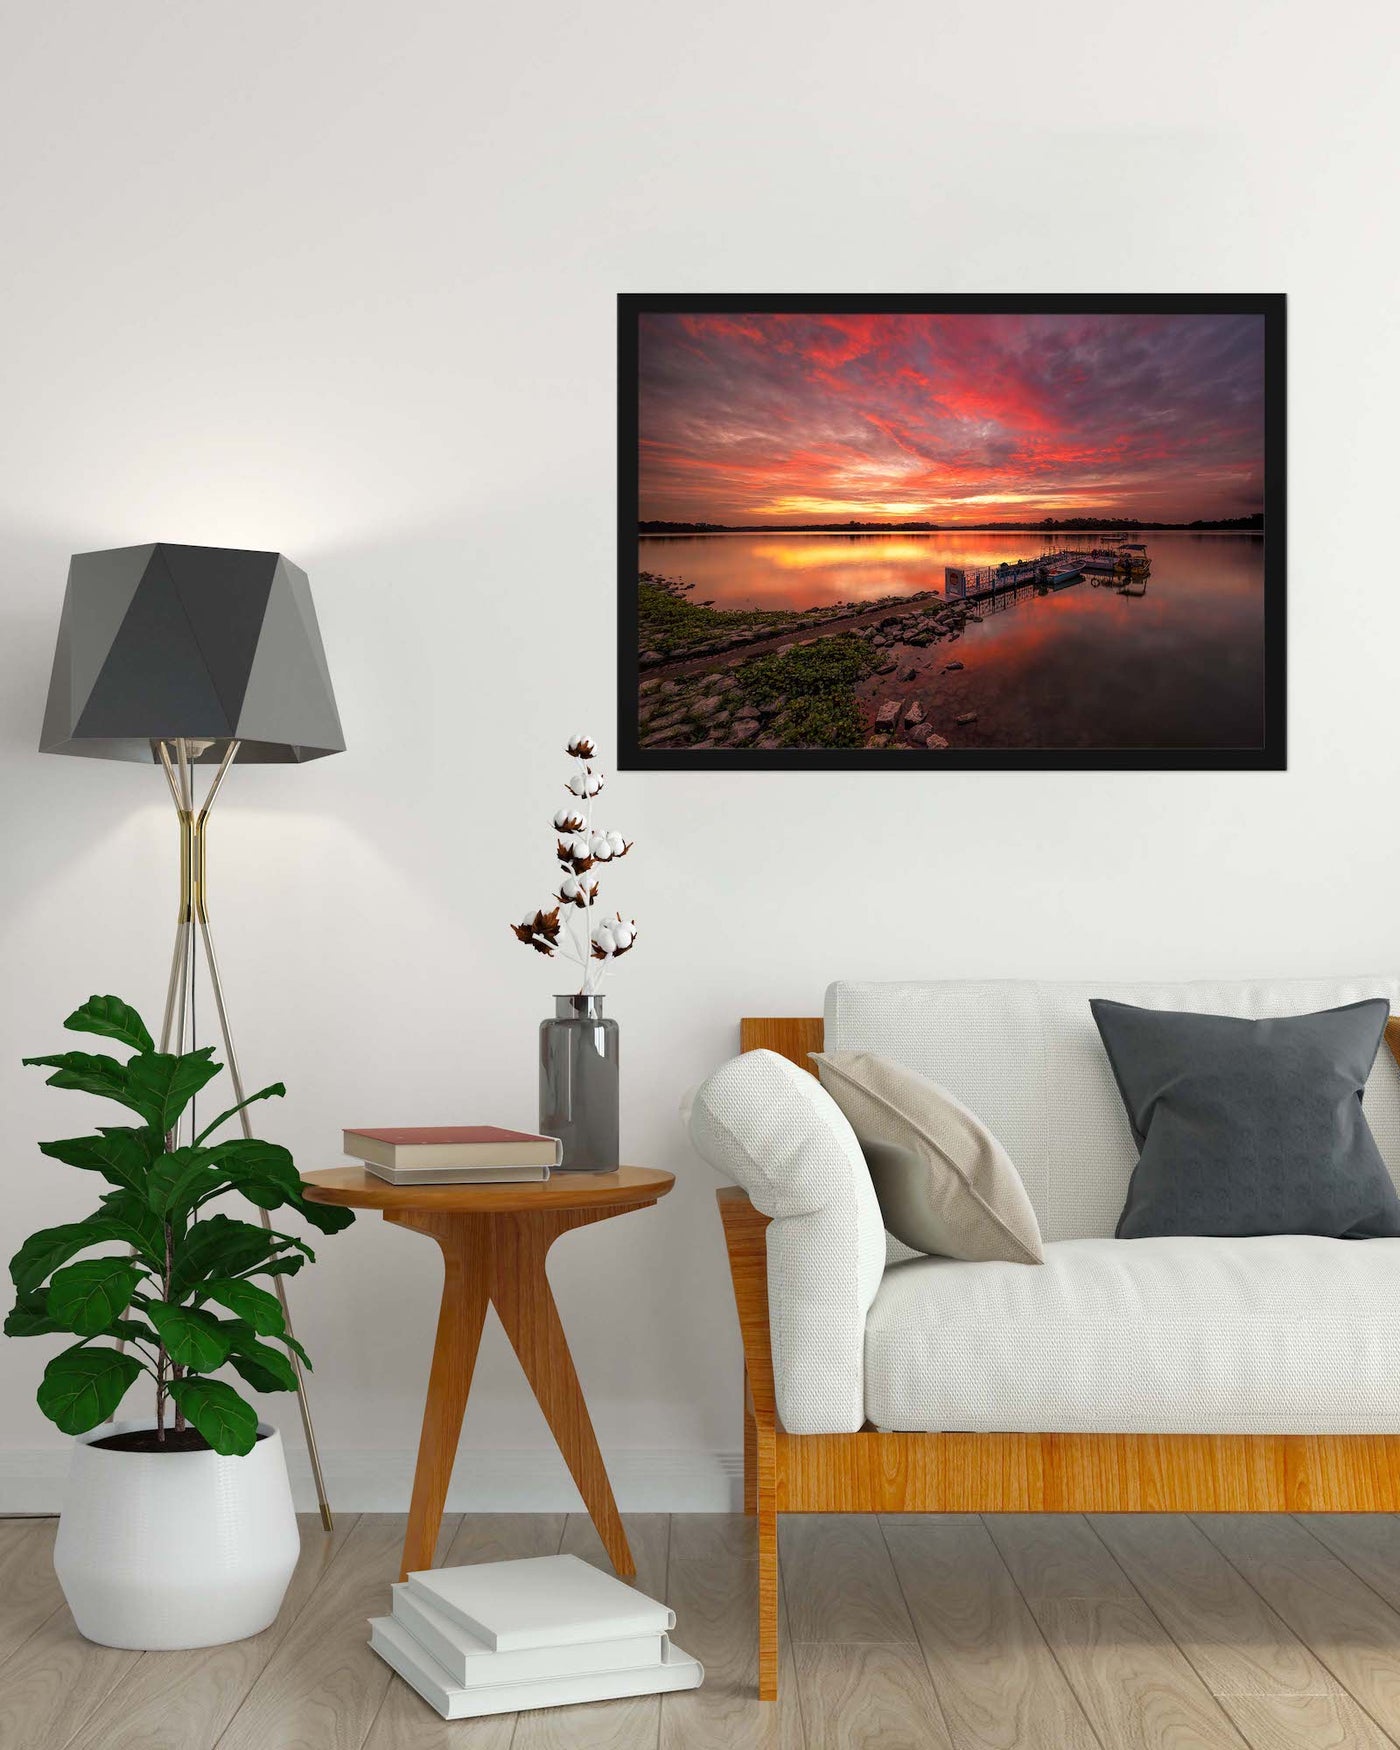 Upper Seletar Reservoir (Framed Prints)